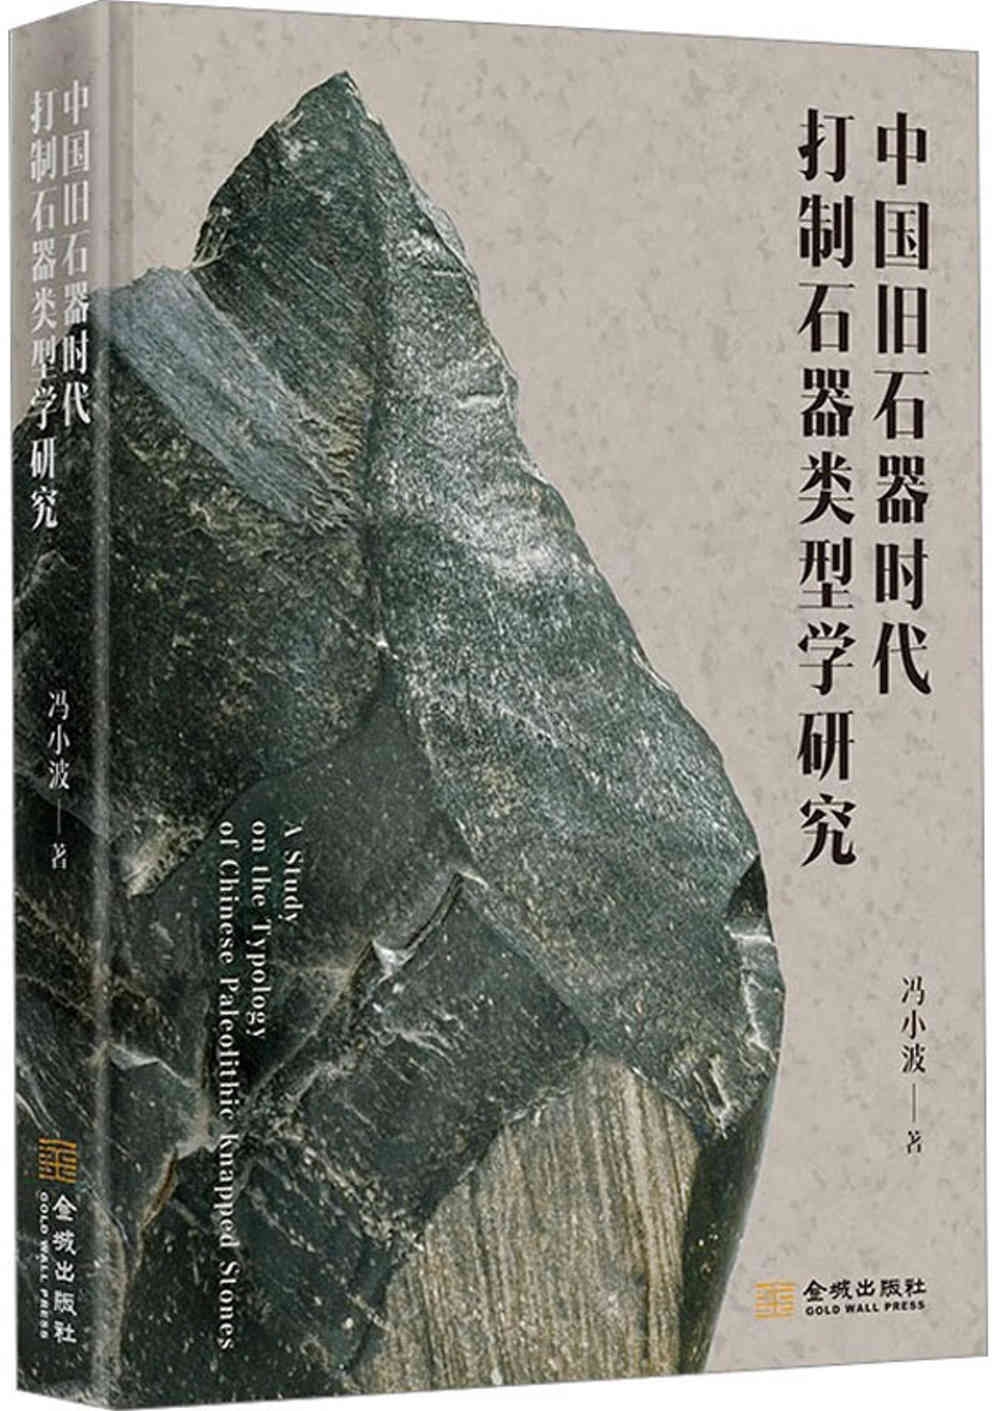 中國舊石器時代打制石器類型學研究